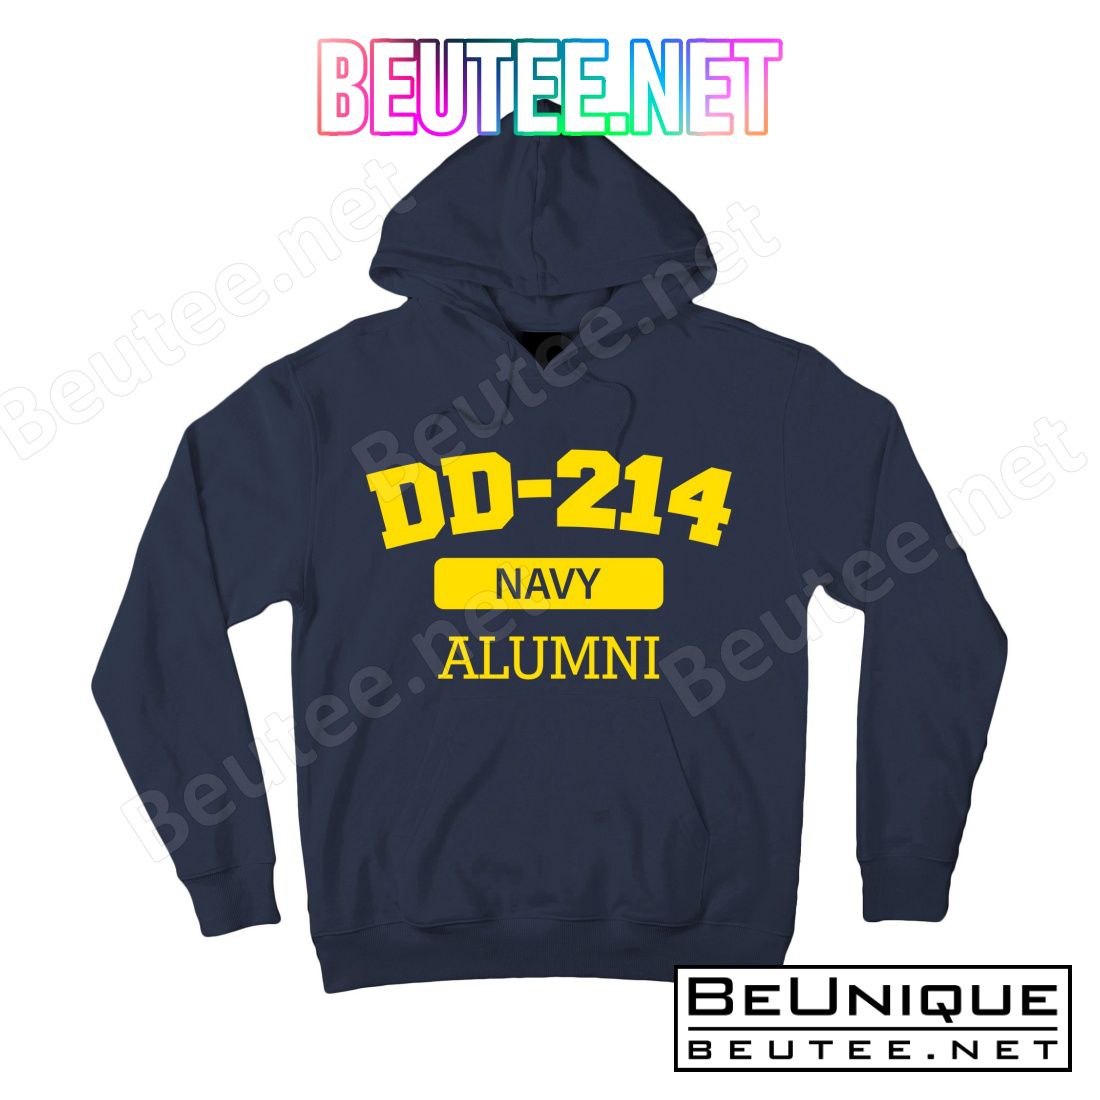 DD-214 Navy Alumni T-Shirts